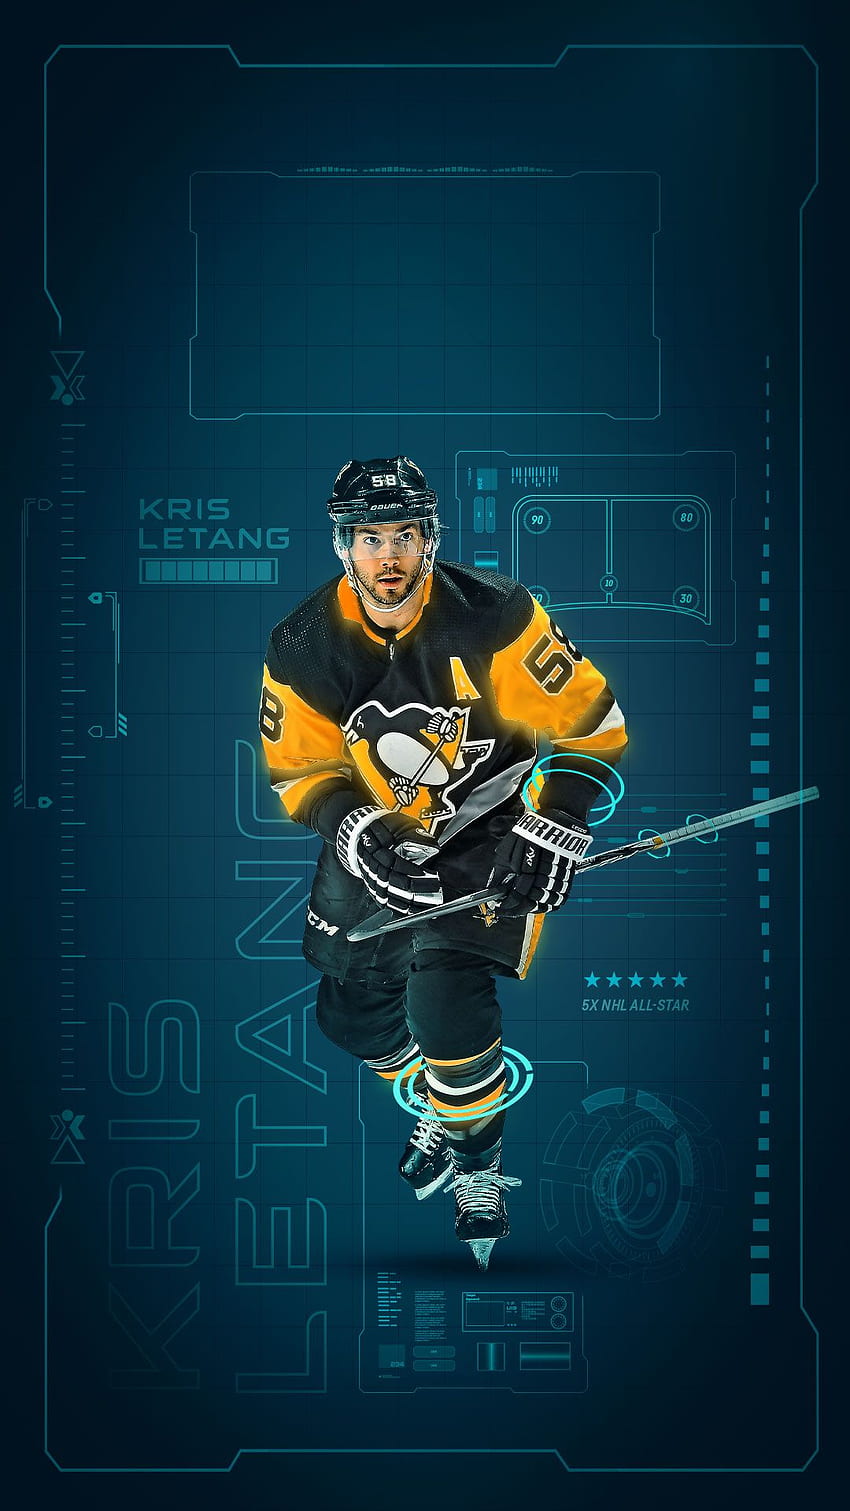 Minnesota North Stars (NHL) iPhone X/XS/XR Lock Screen Wallpaper